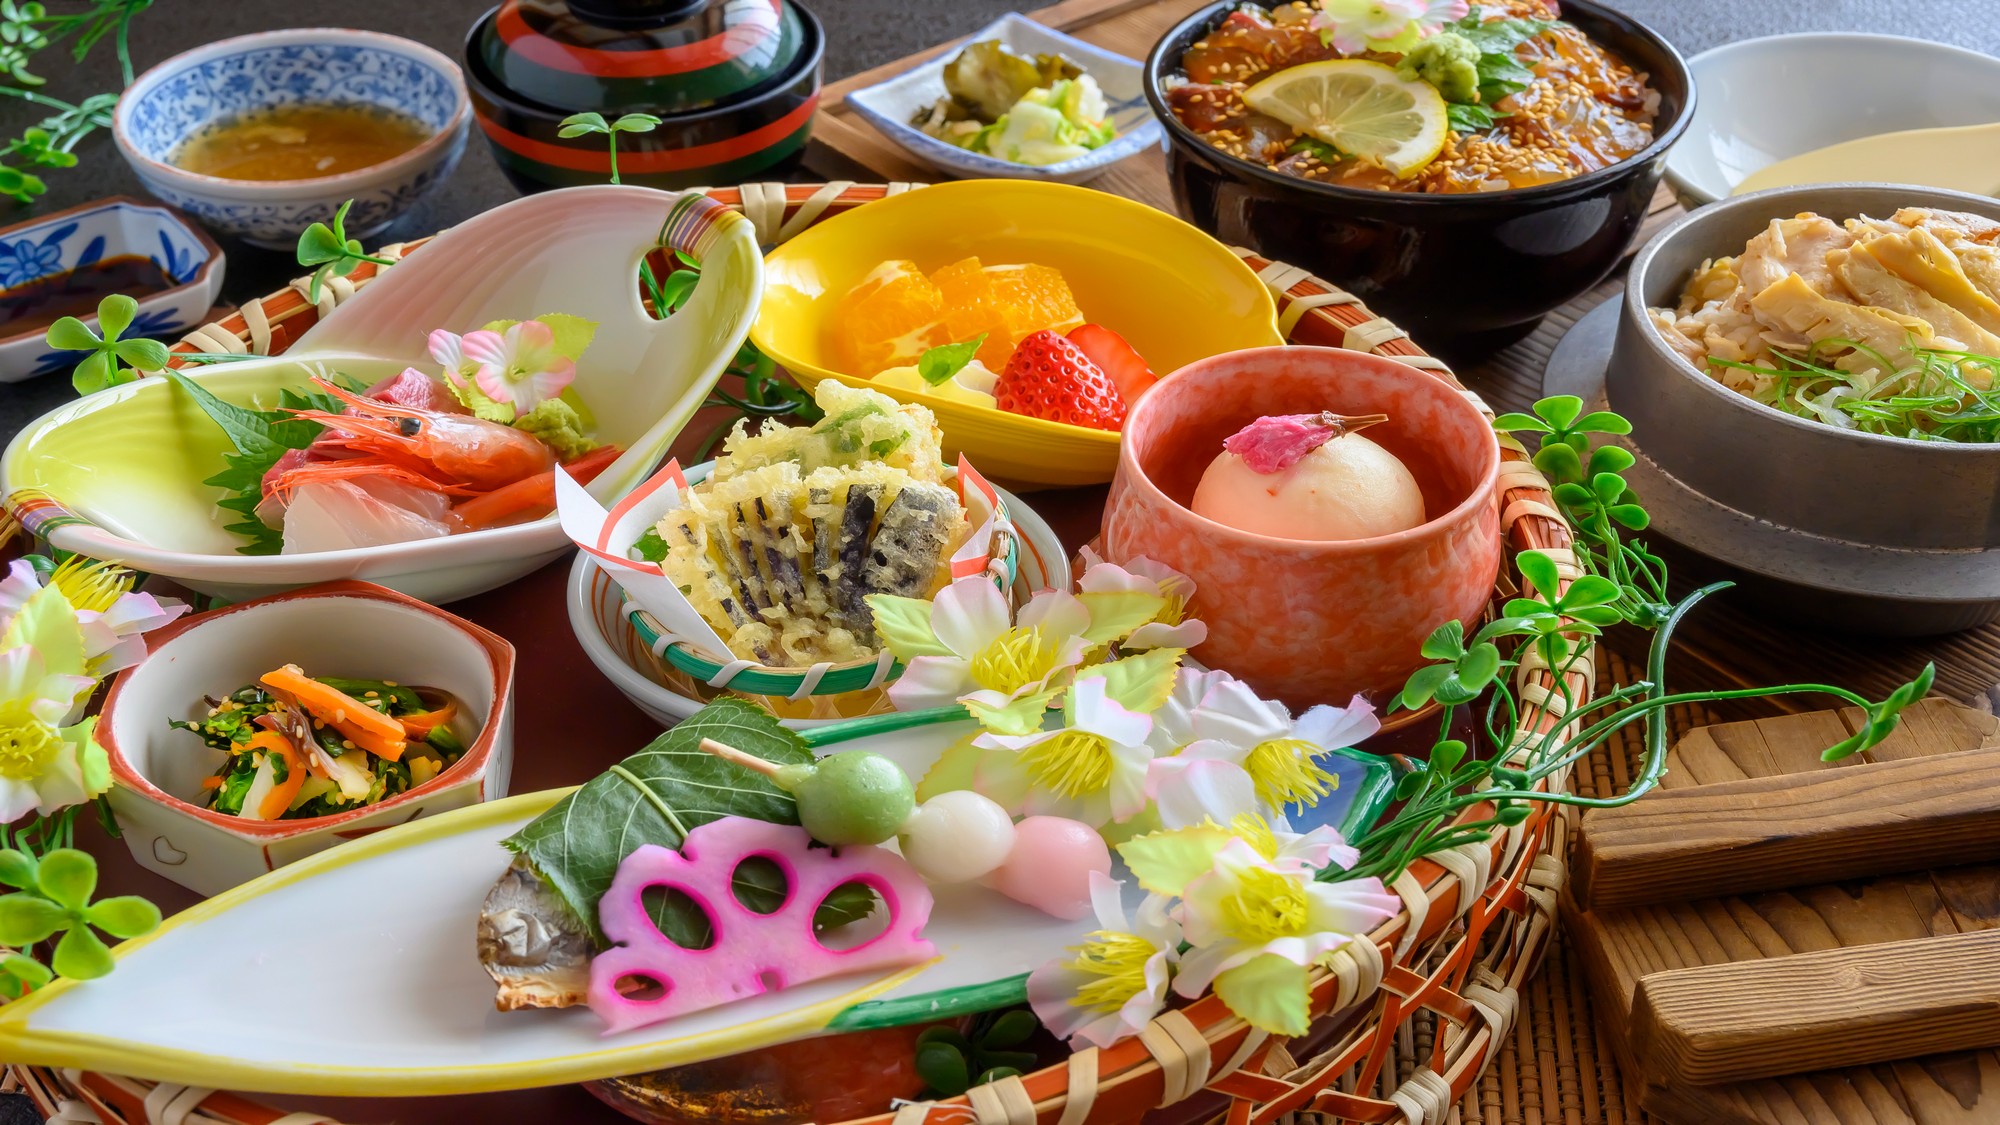 さわら桜香焼き・春野菜の天ぷらなど見た目・香り・味で春を楽しんでください♪